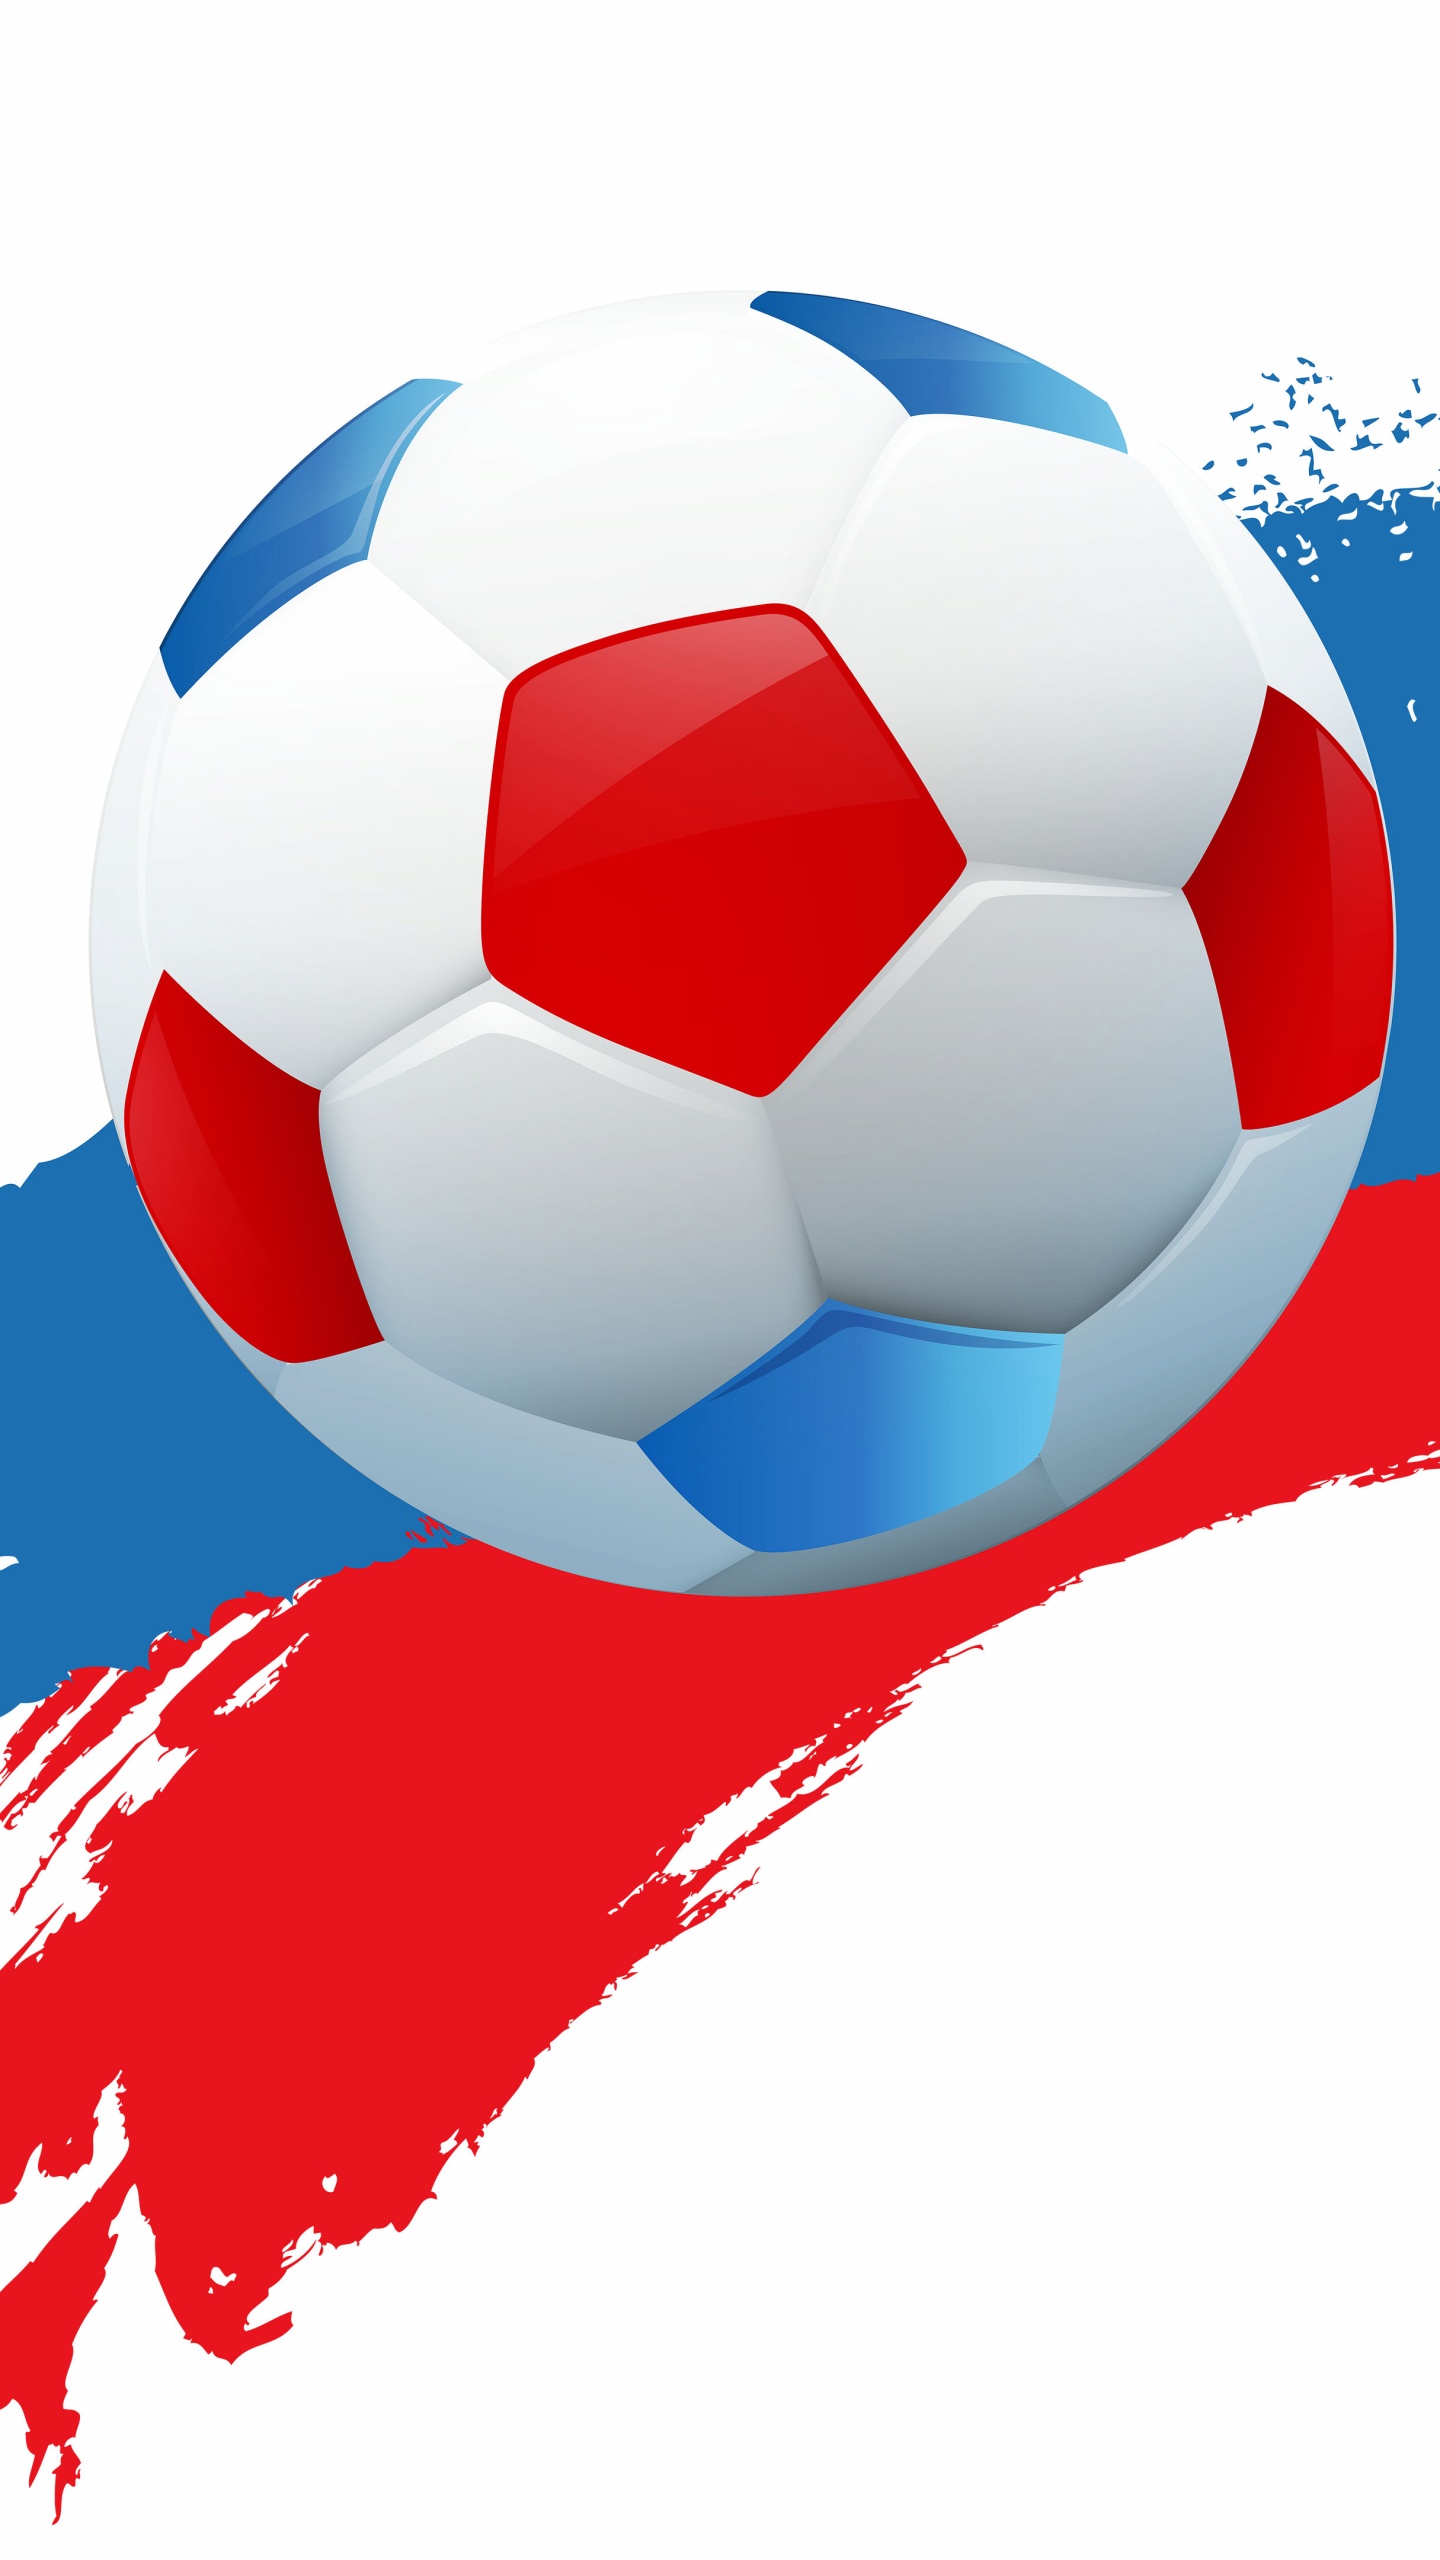 2018年世界杯, 球, 国际足联, 足球, 体育设备 壁纸 1440x2560 允许